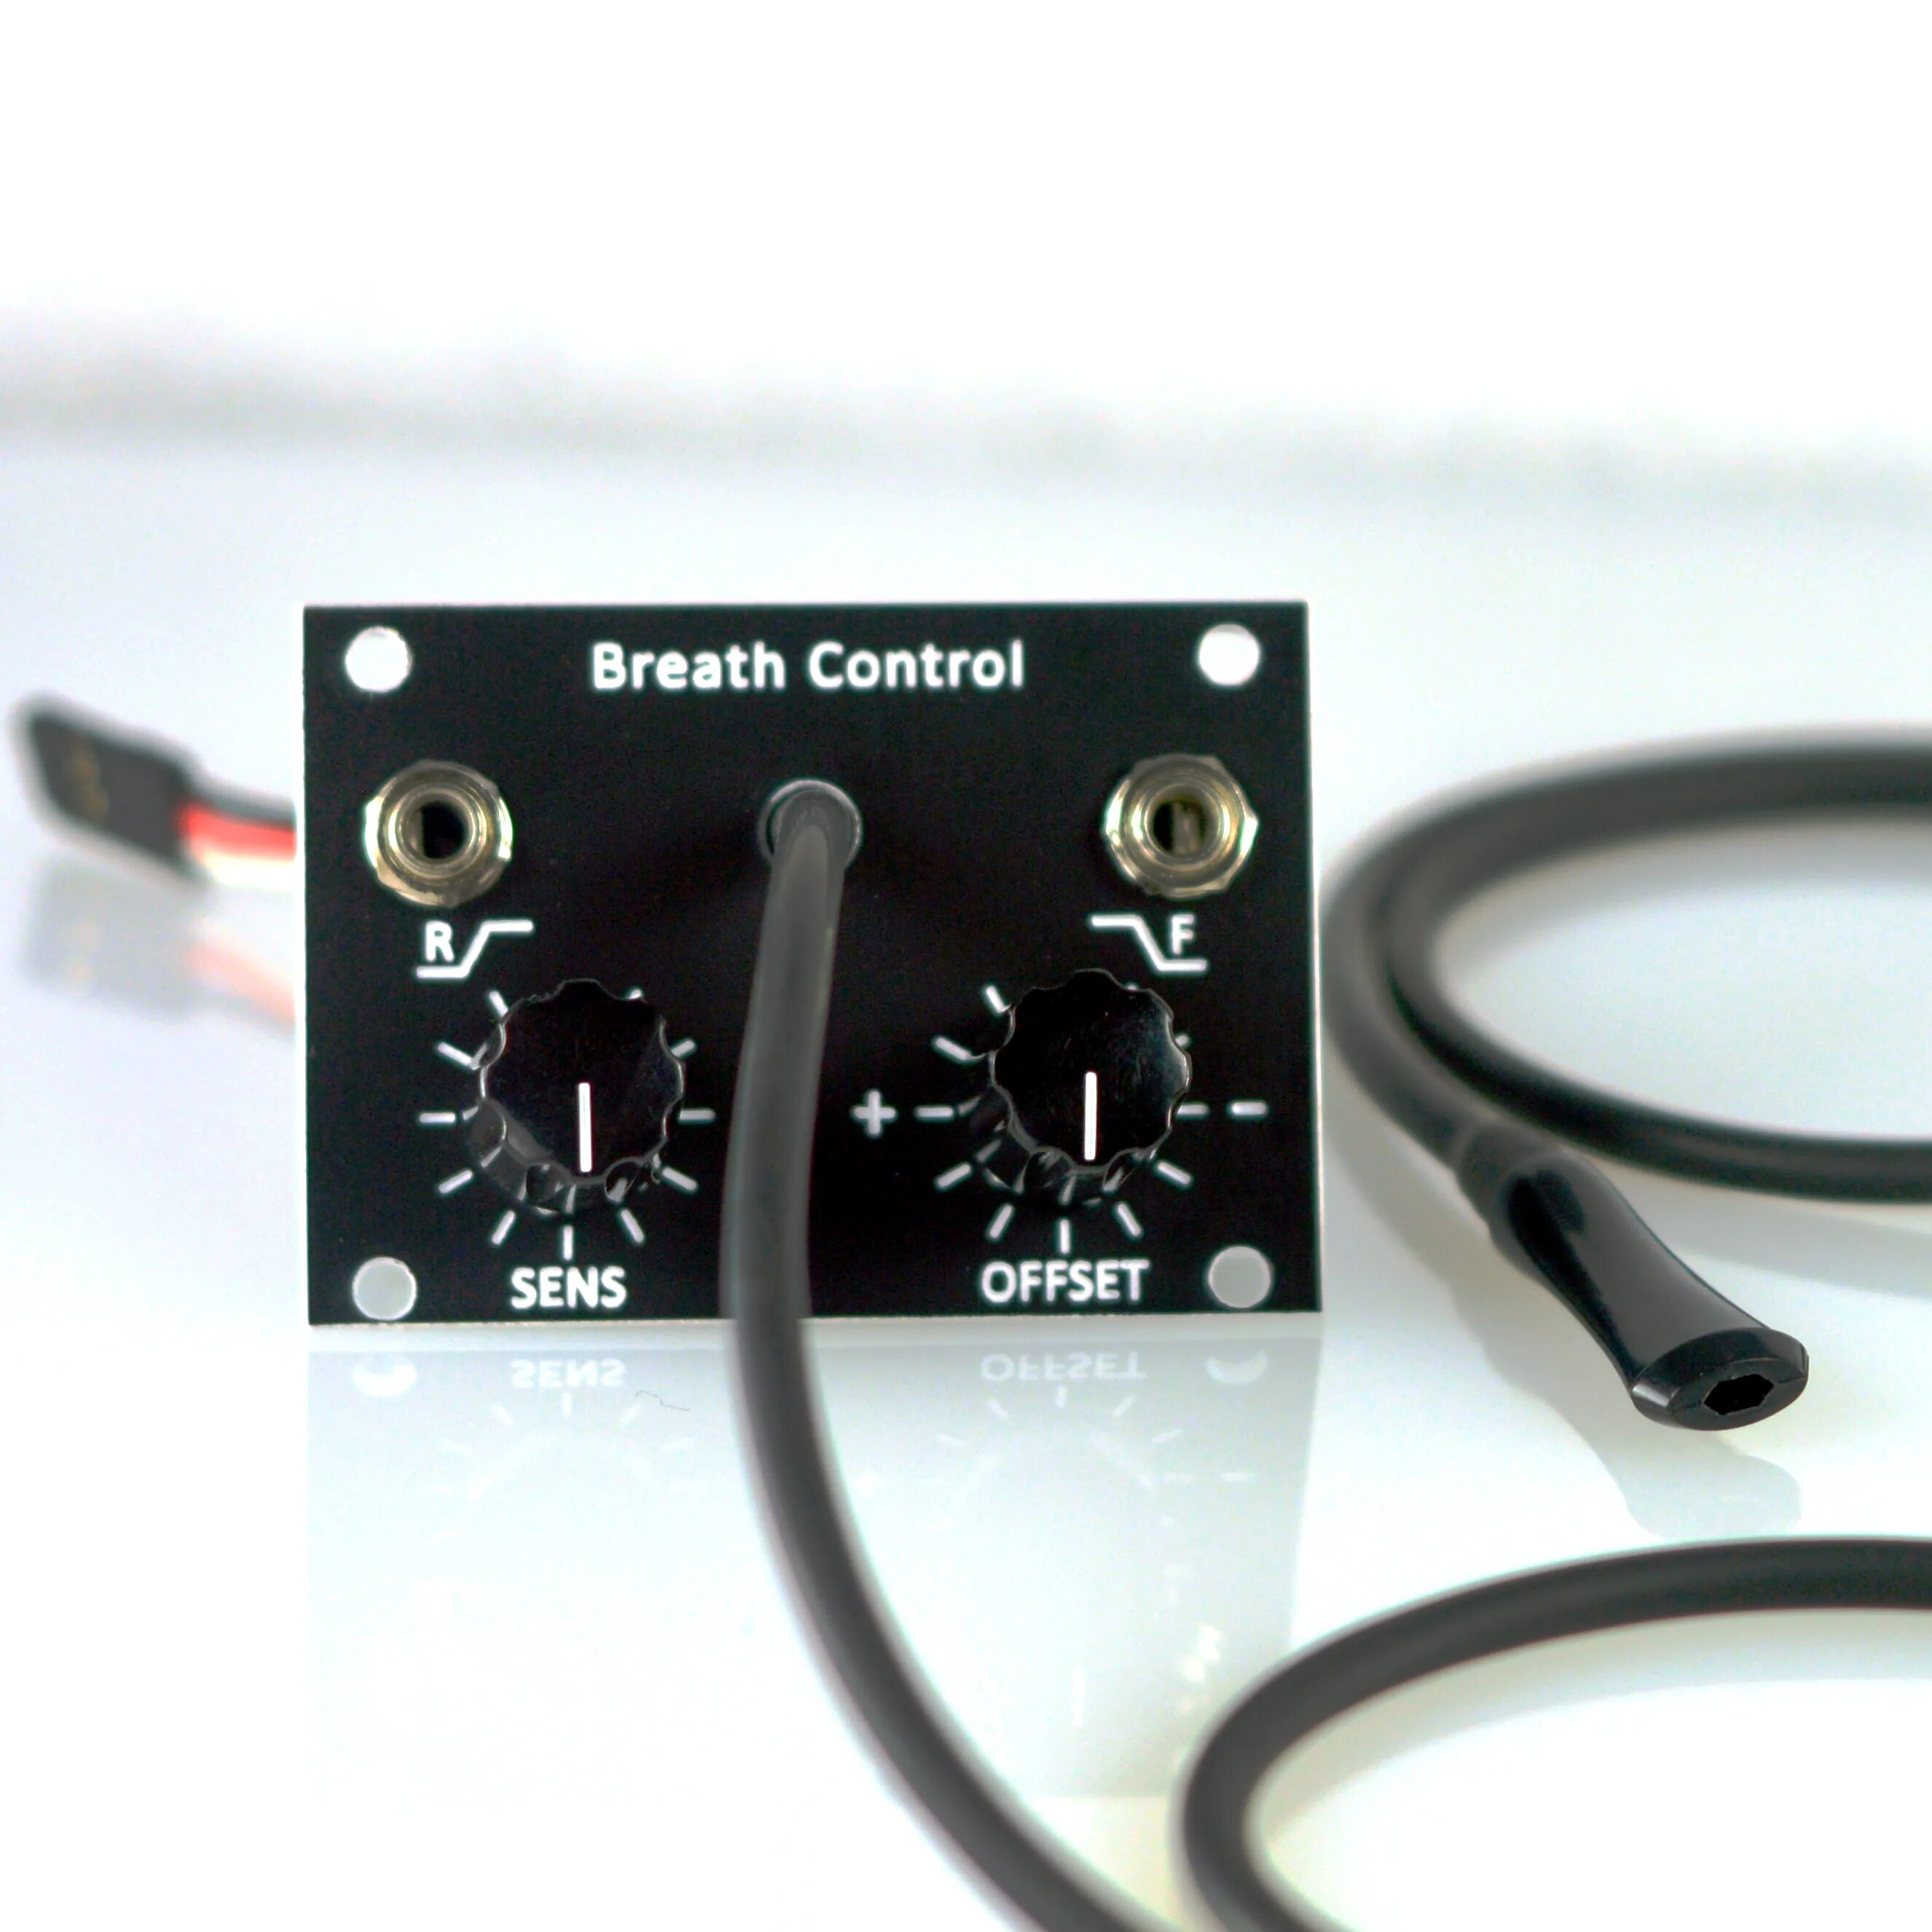 Breathe Control. Breath Controller. Breath Control NOXCAPES. Girl Breath Control. Breath control